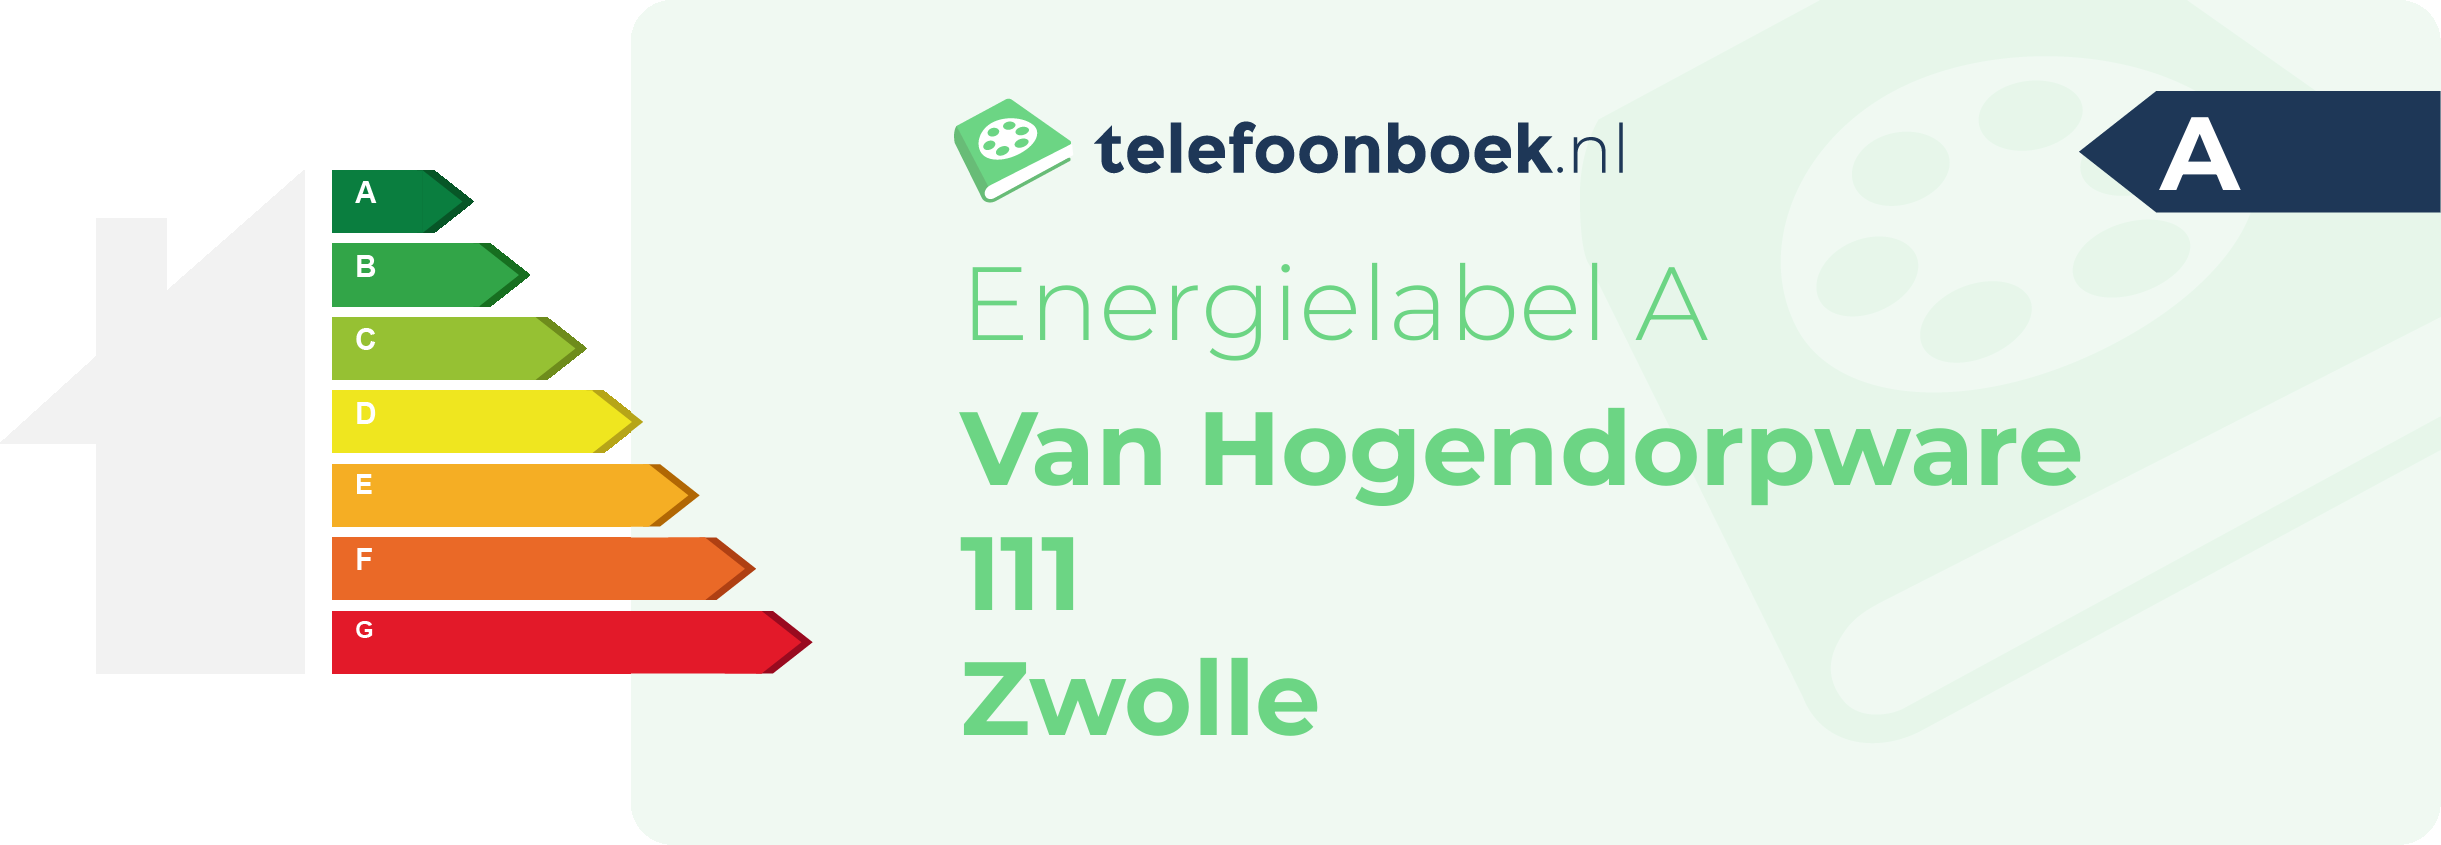 Energielabel Van Hogendorpware 111 Zwolle